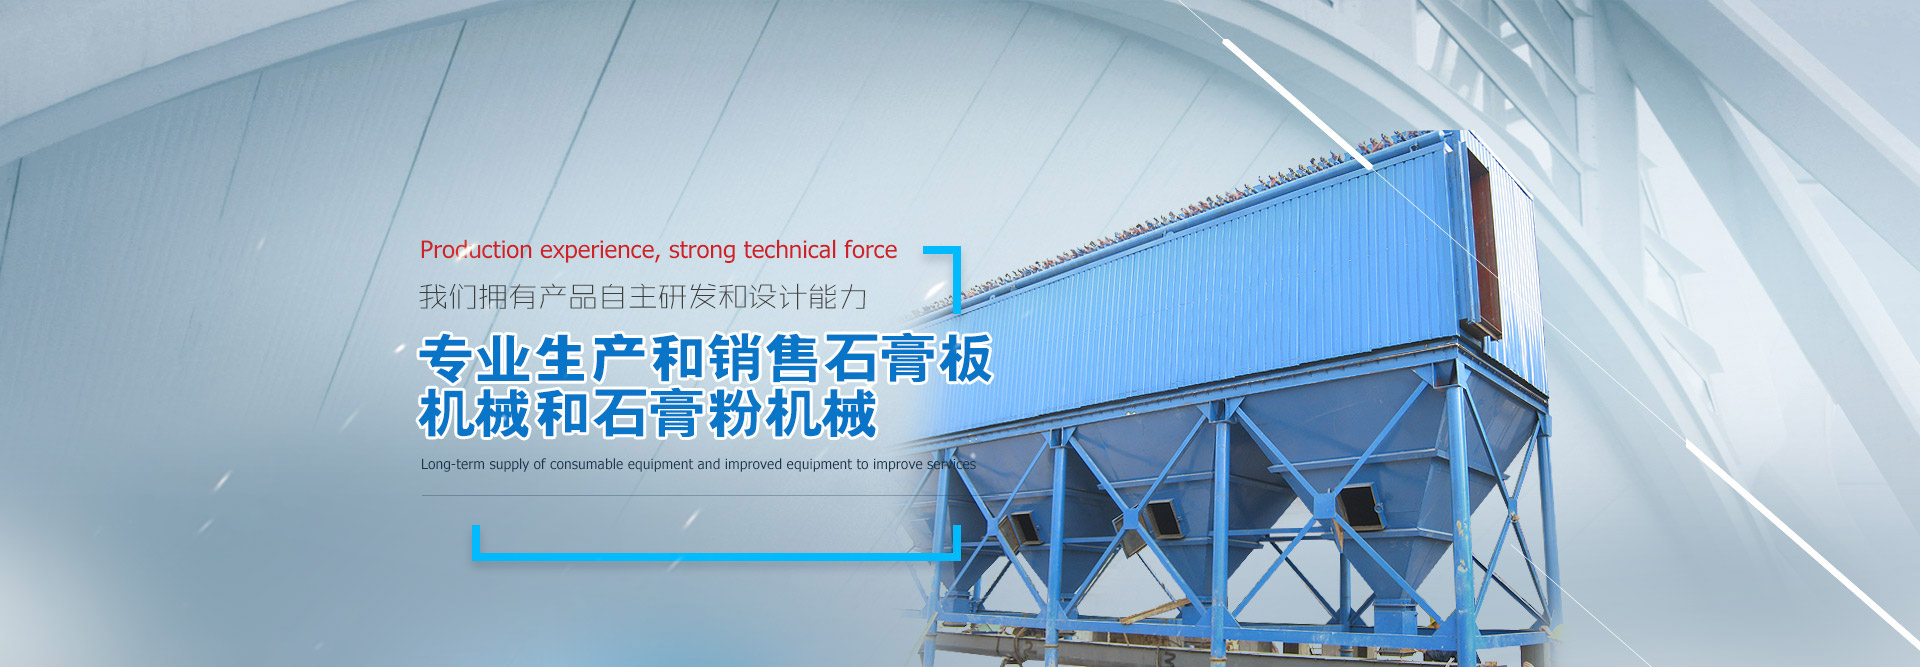 晉州市華鑫建材機械制造有限公司